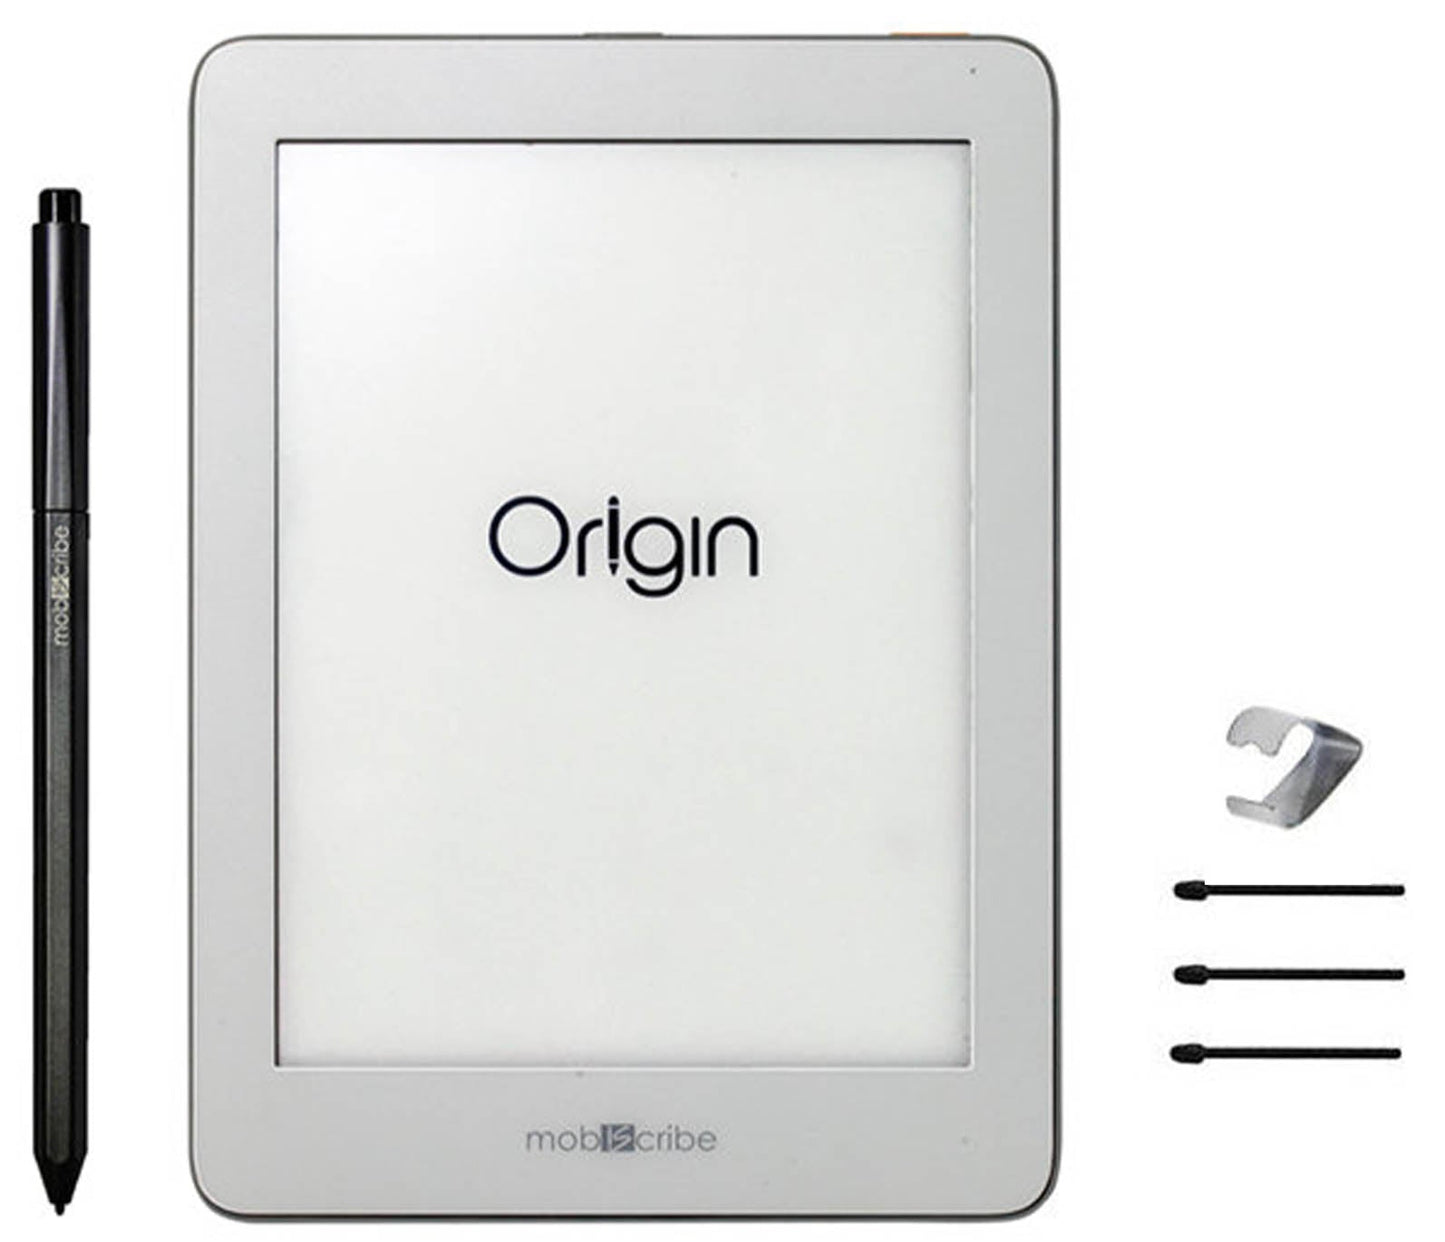 整新機- Origin 電子筆記本